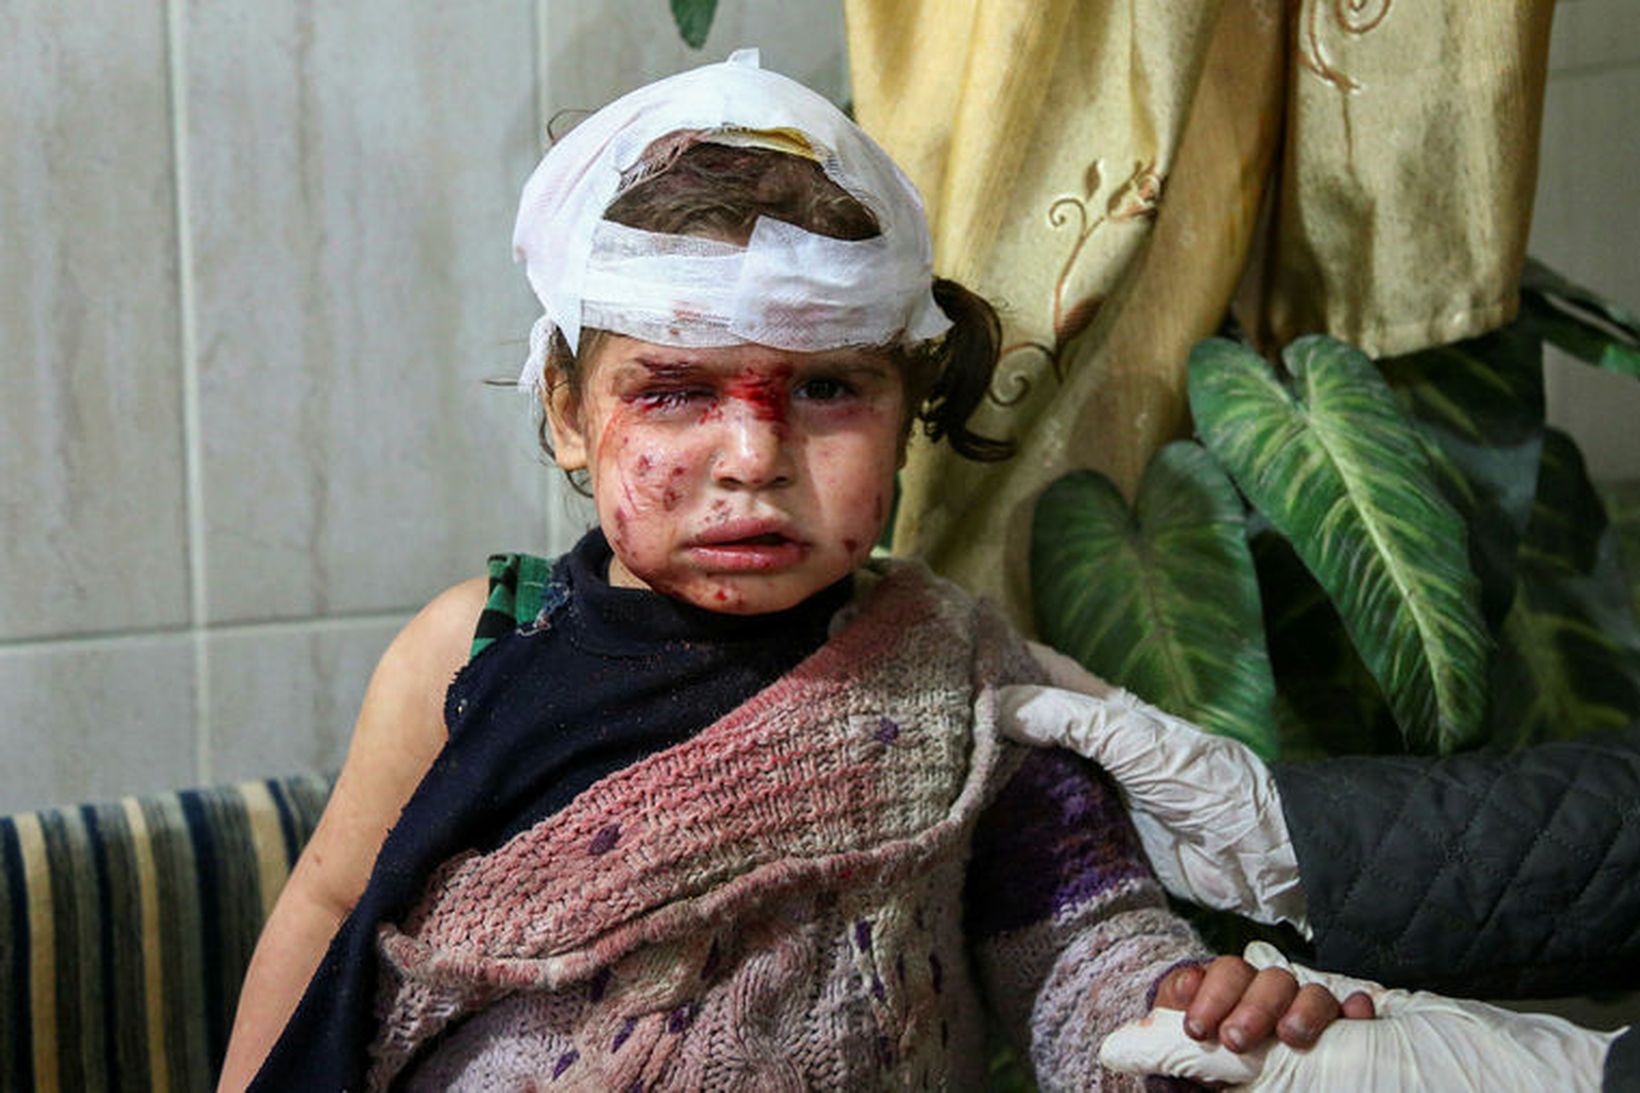 Barn sem særðist í loftárásum stjórnarhersins í Austur-Ghouta í gær.